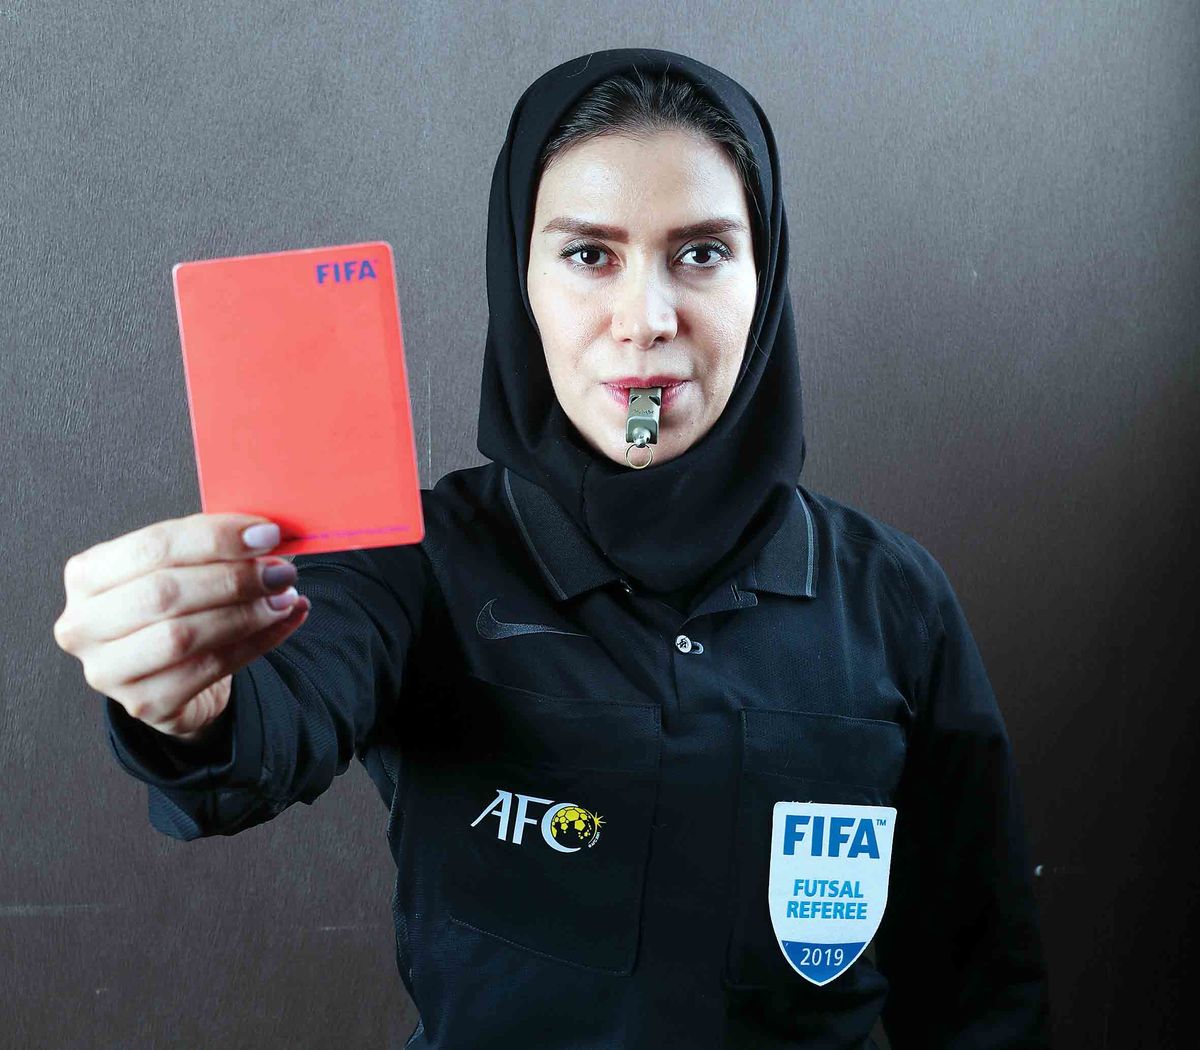 زن ایرانی که قرار است جام جهانی فوتسال مردان را قضاوت کند/ گلاره ناظمی: دوست دارم داور بازی برزیل باشم